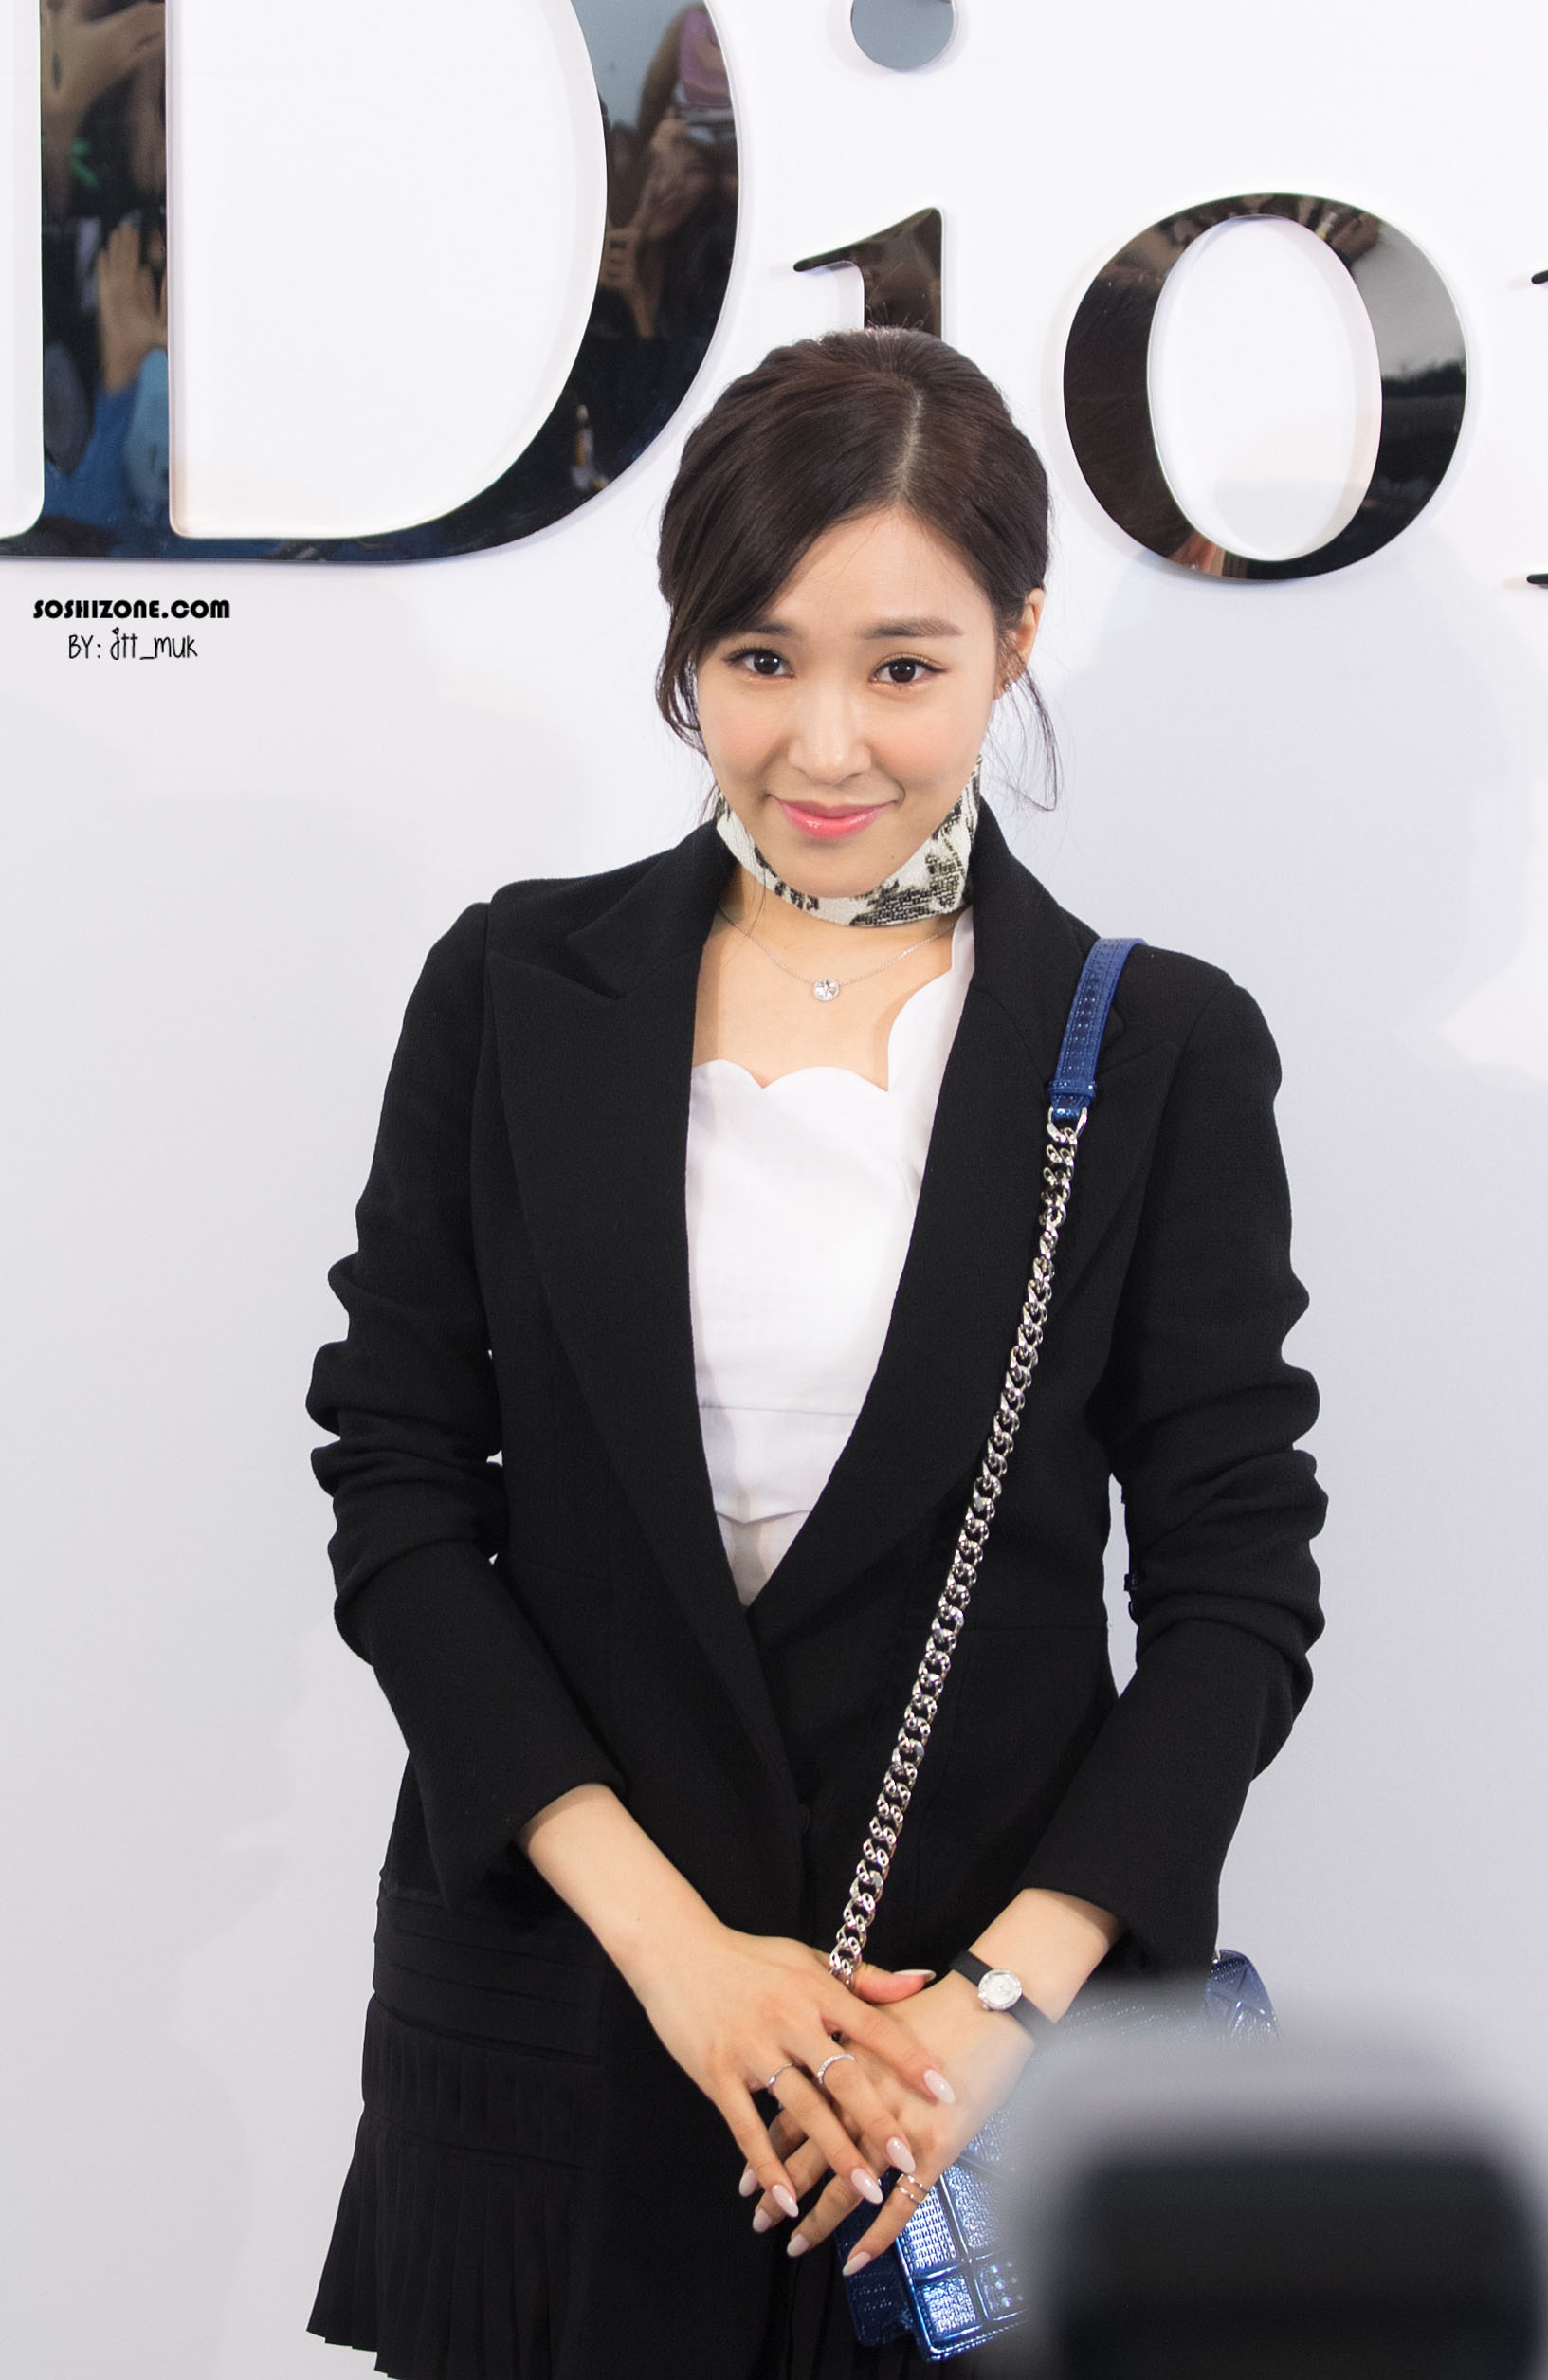 [PIC][17-02-2016]Tiffany khởi hành đi Thái Lan để tham dự sự kiện khai trương chi nhánh của thương hiệu "Christian Dior" vào hôm nay - Page 13 241E483A5728D3BB37D881